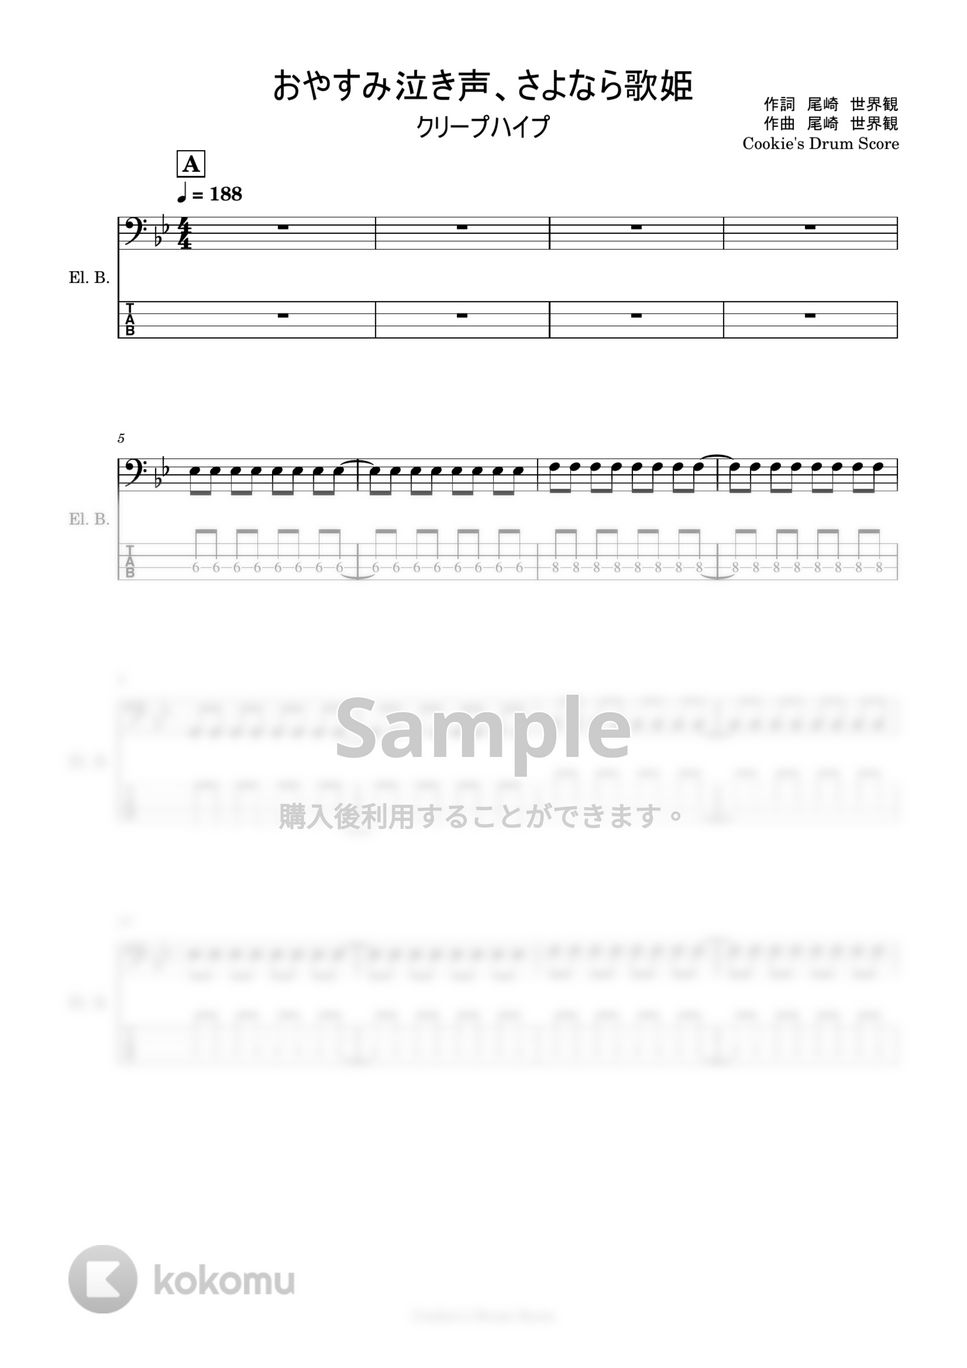 クリープハイプ - 【ベース楽譜】 おやすみ泣き声、さよなら歌姫 / クリープハイプ - Oyasumi nakigoe, sayonara utahime / CreepHyp 【BassScore】 by Cookie's Drum Score